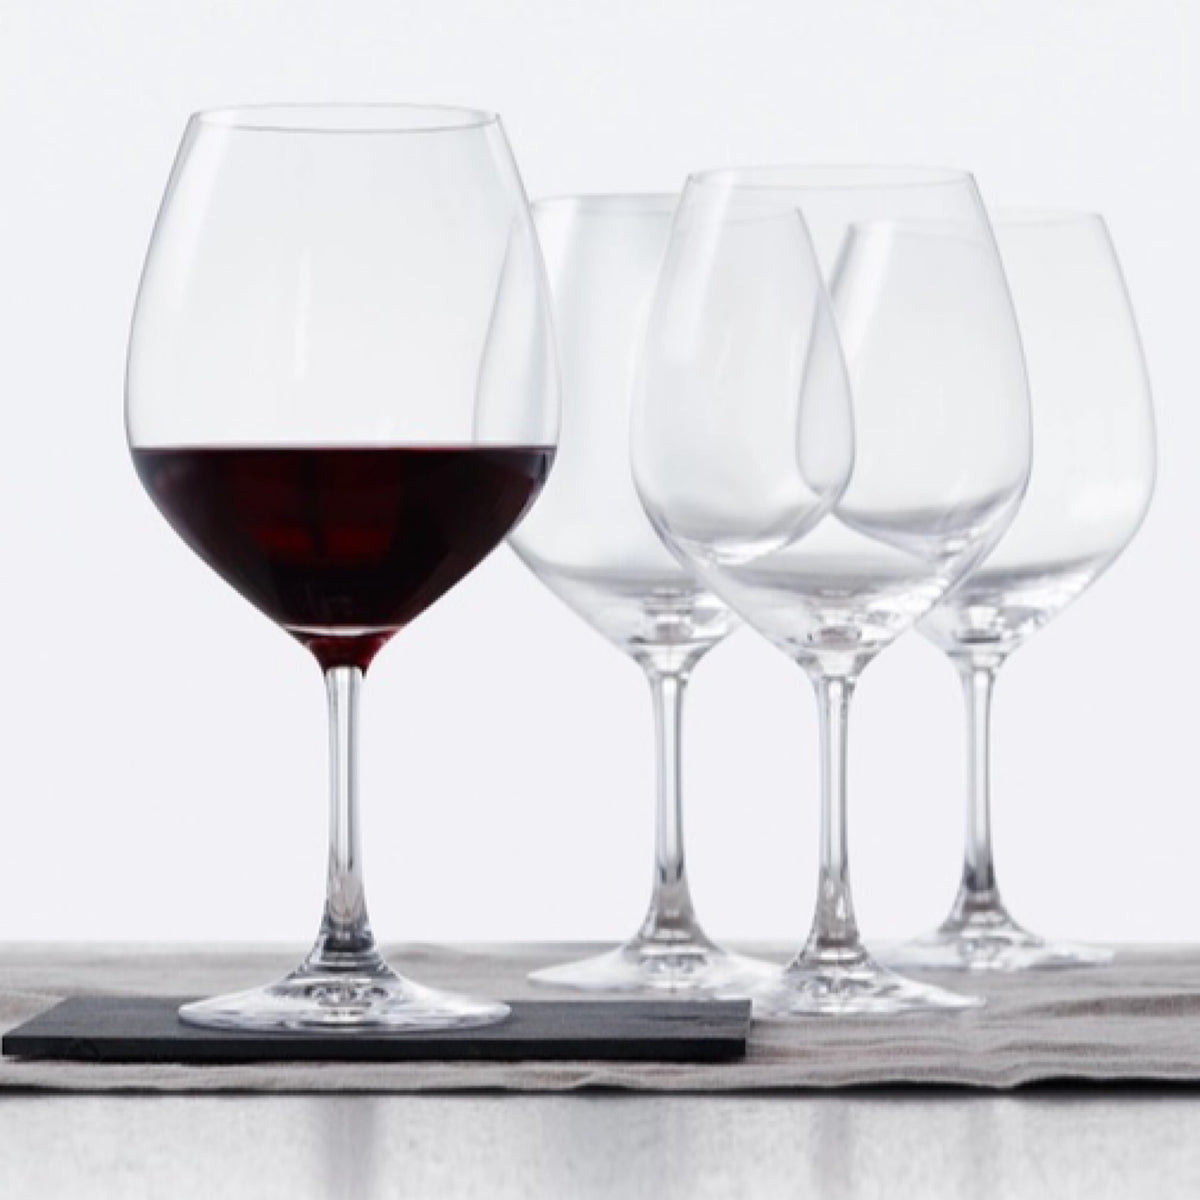 Vino Grande Burgundy Glasses, Set of 4